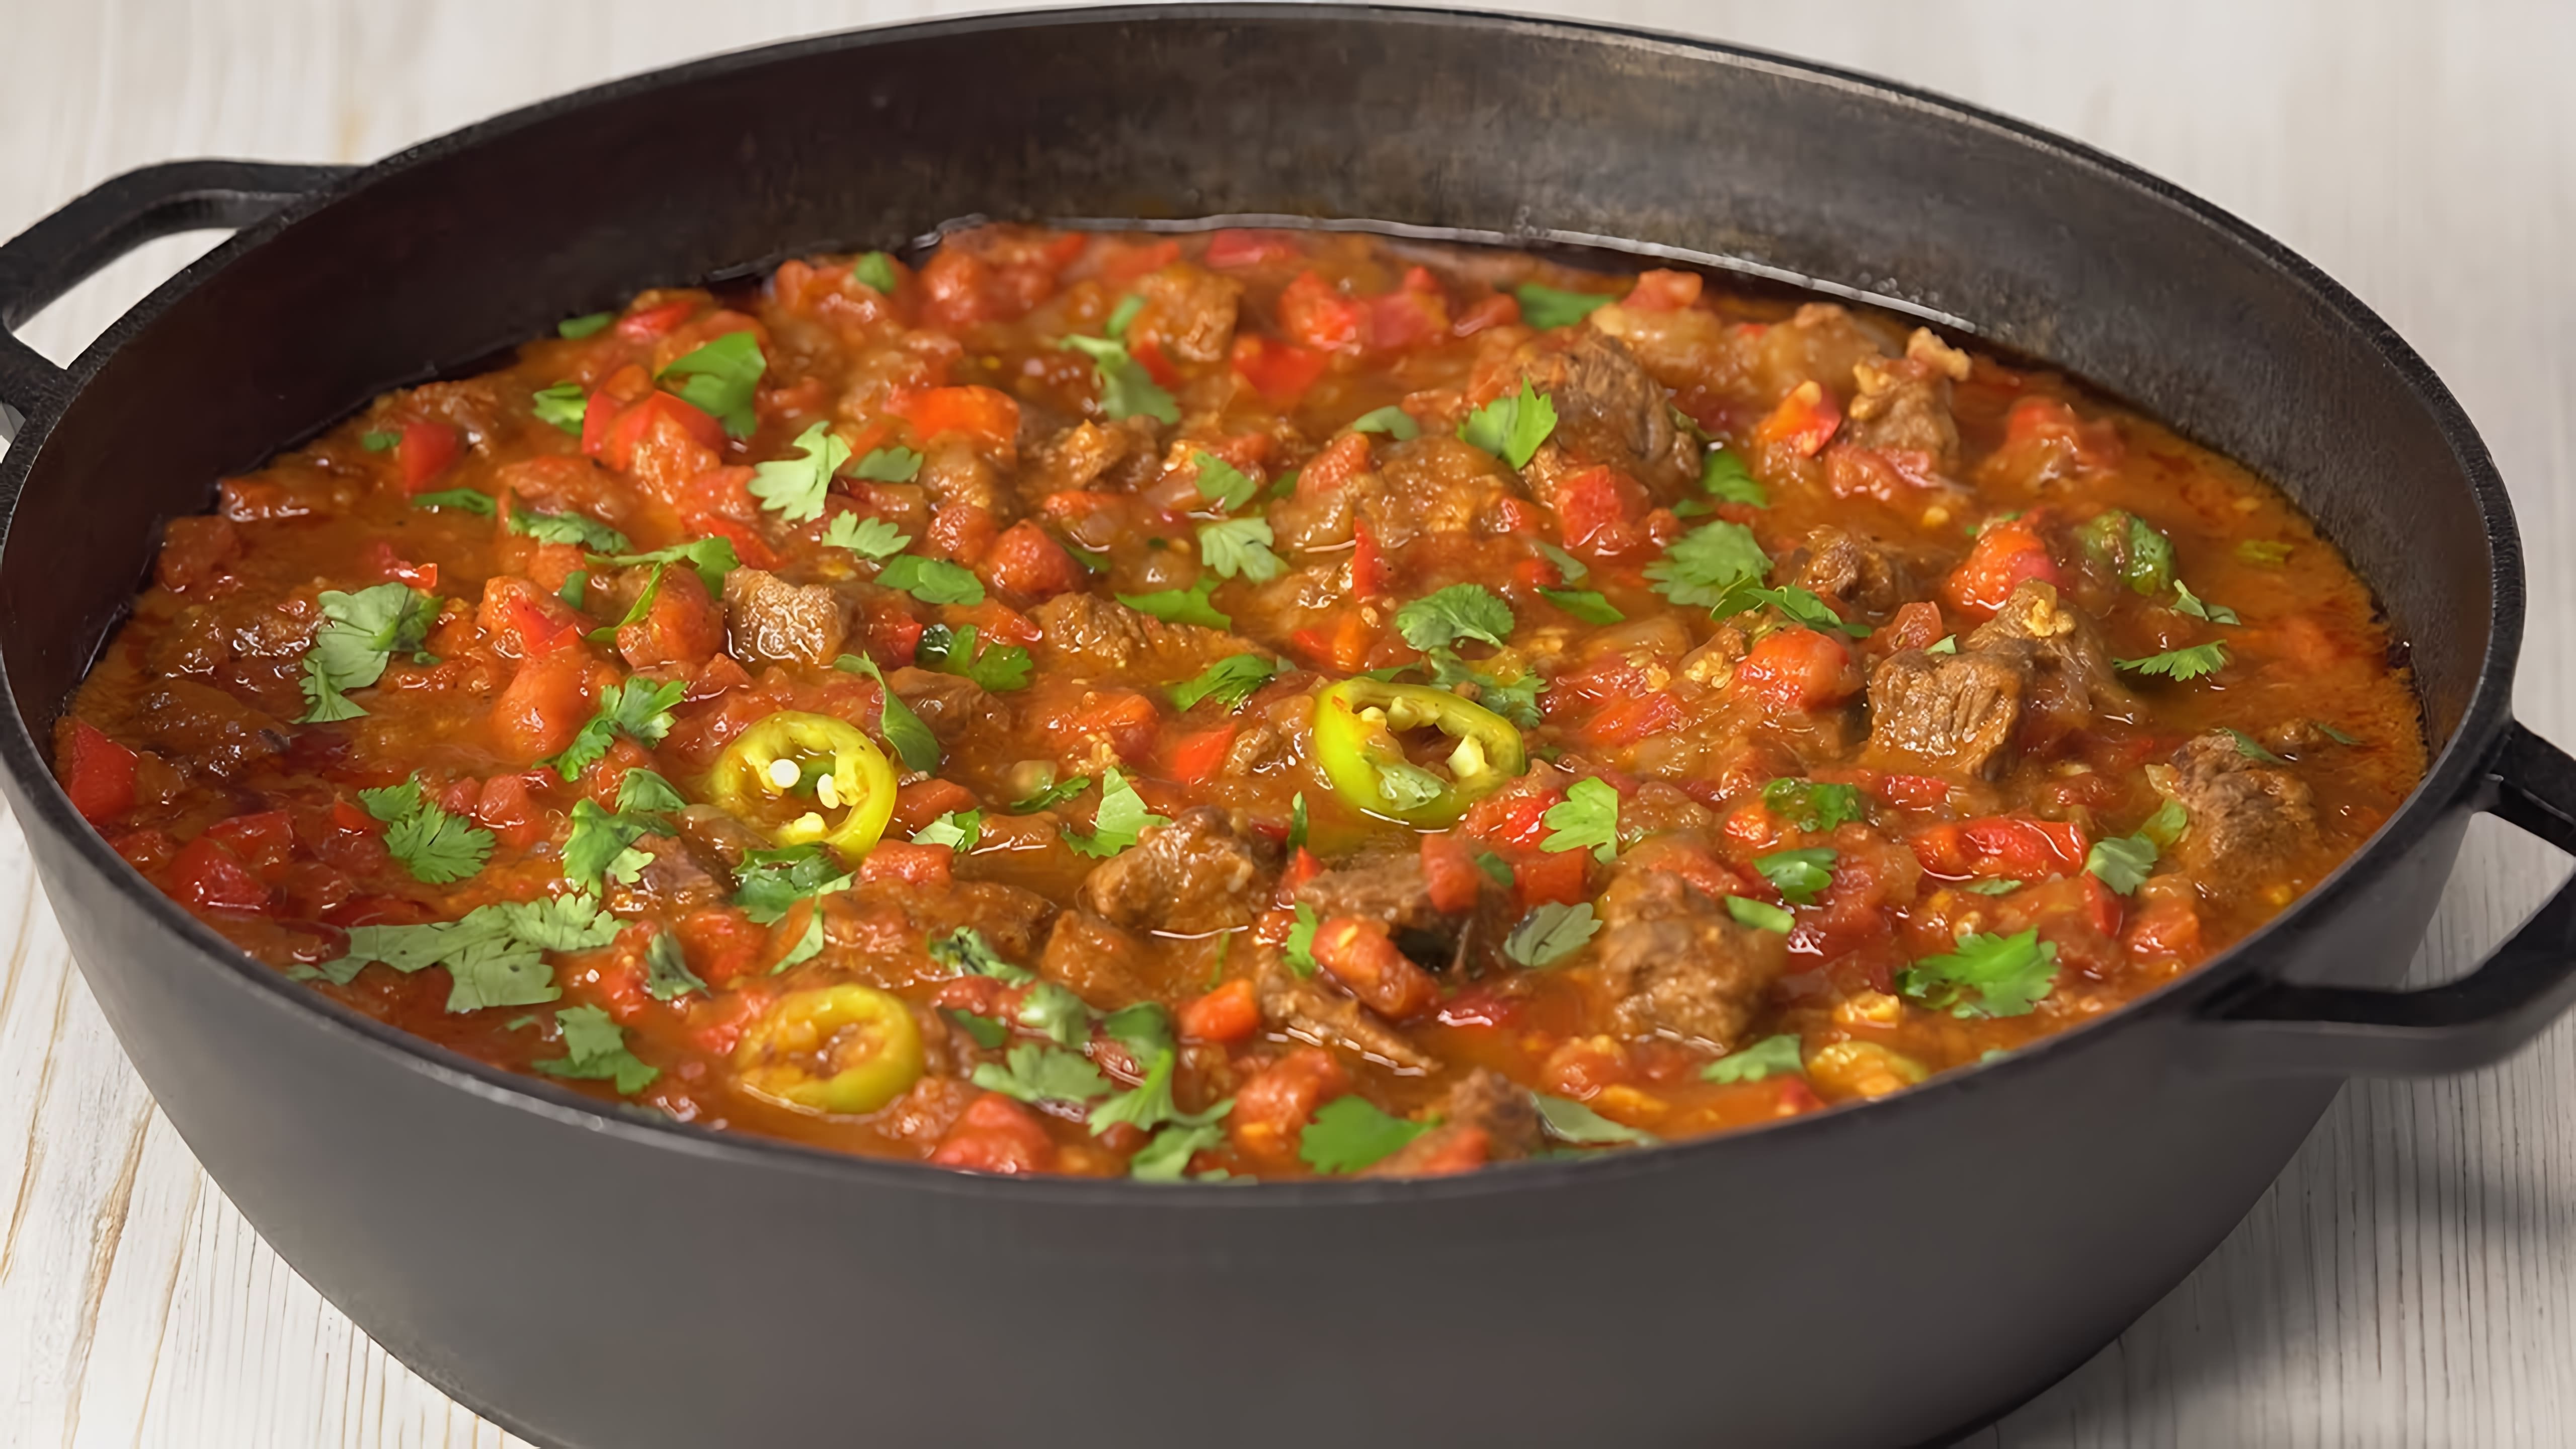 В этом видео демонстрируется рецепт приготовления грузинского блюда "Остри из говядины" в овощном соусе на сковороде